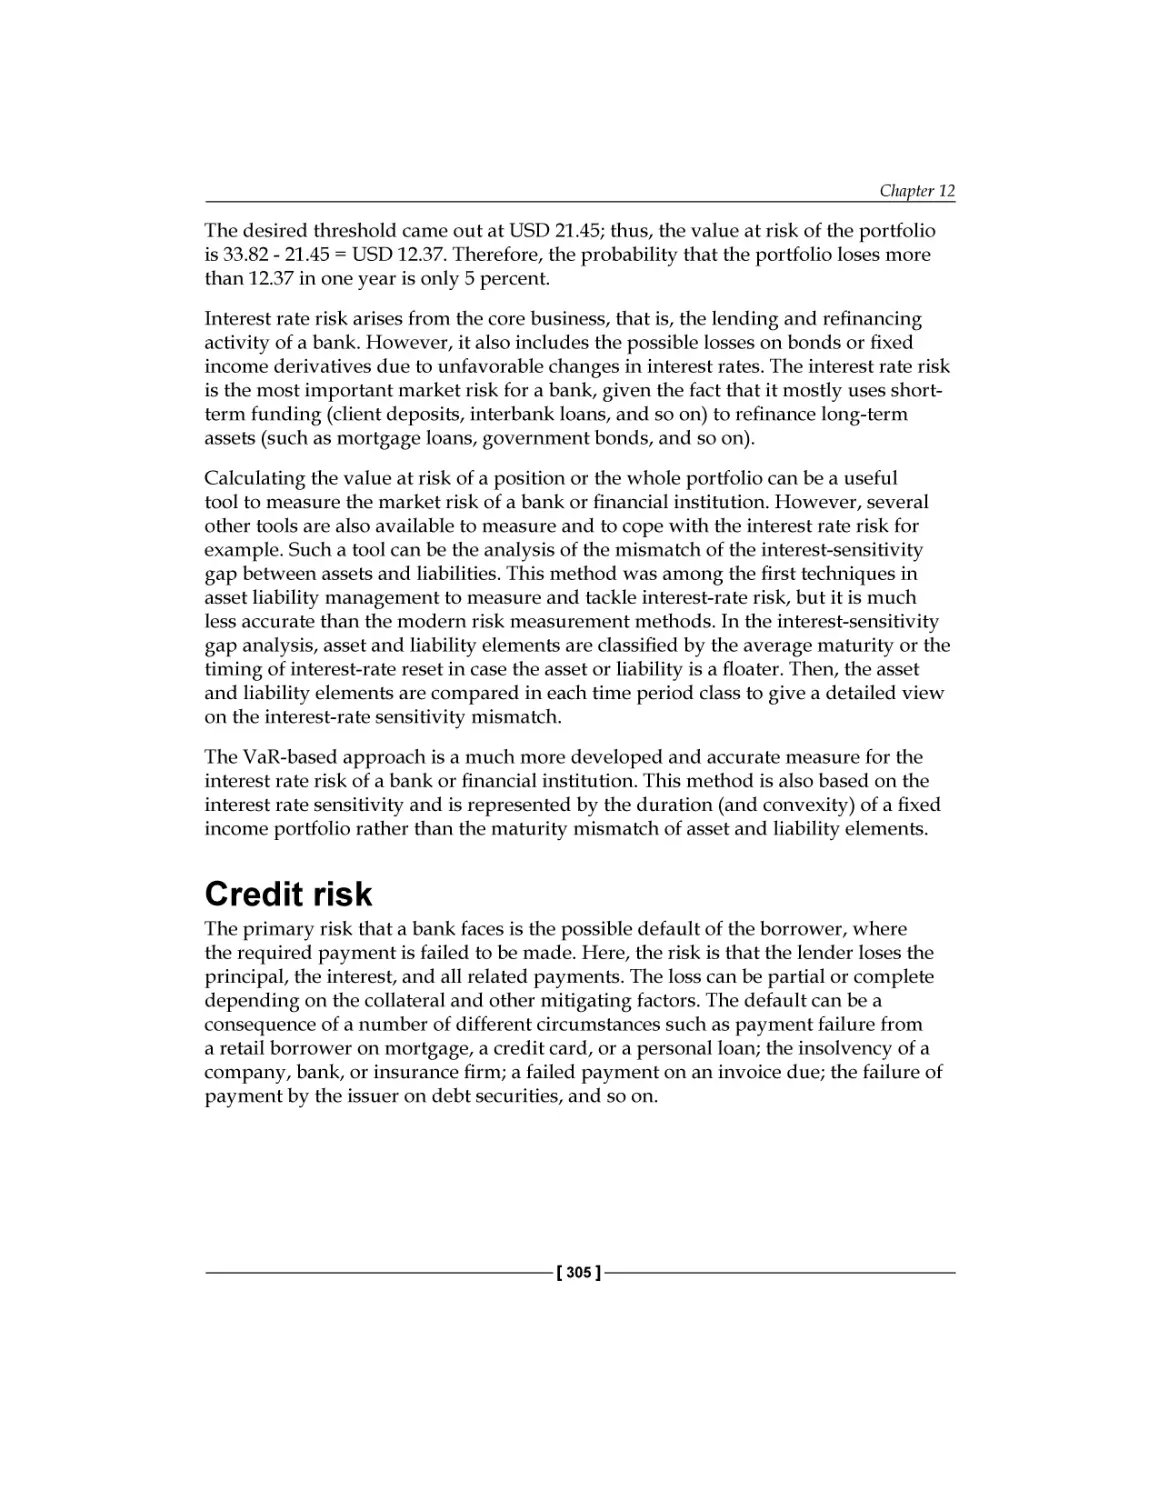 Credit risk